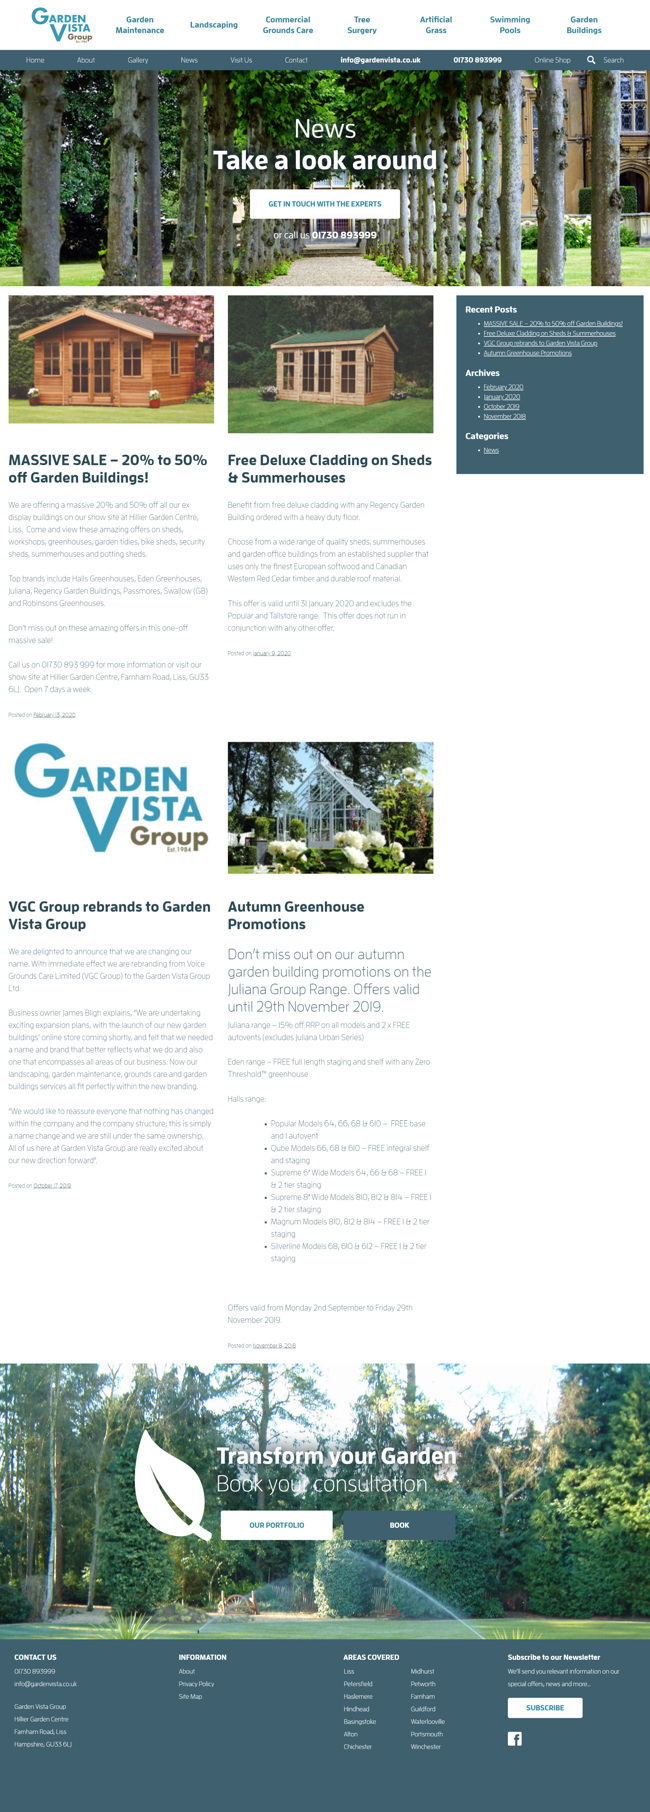 Garden Vista Group Website Design and WordPress Development SP010 News